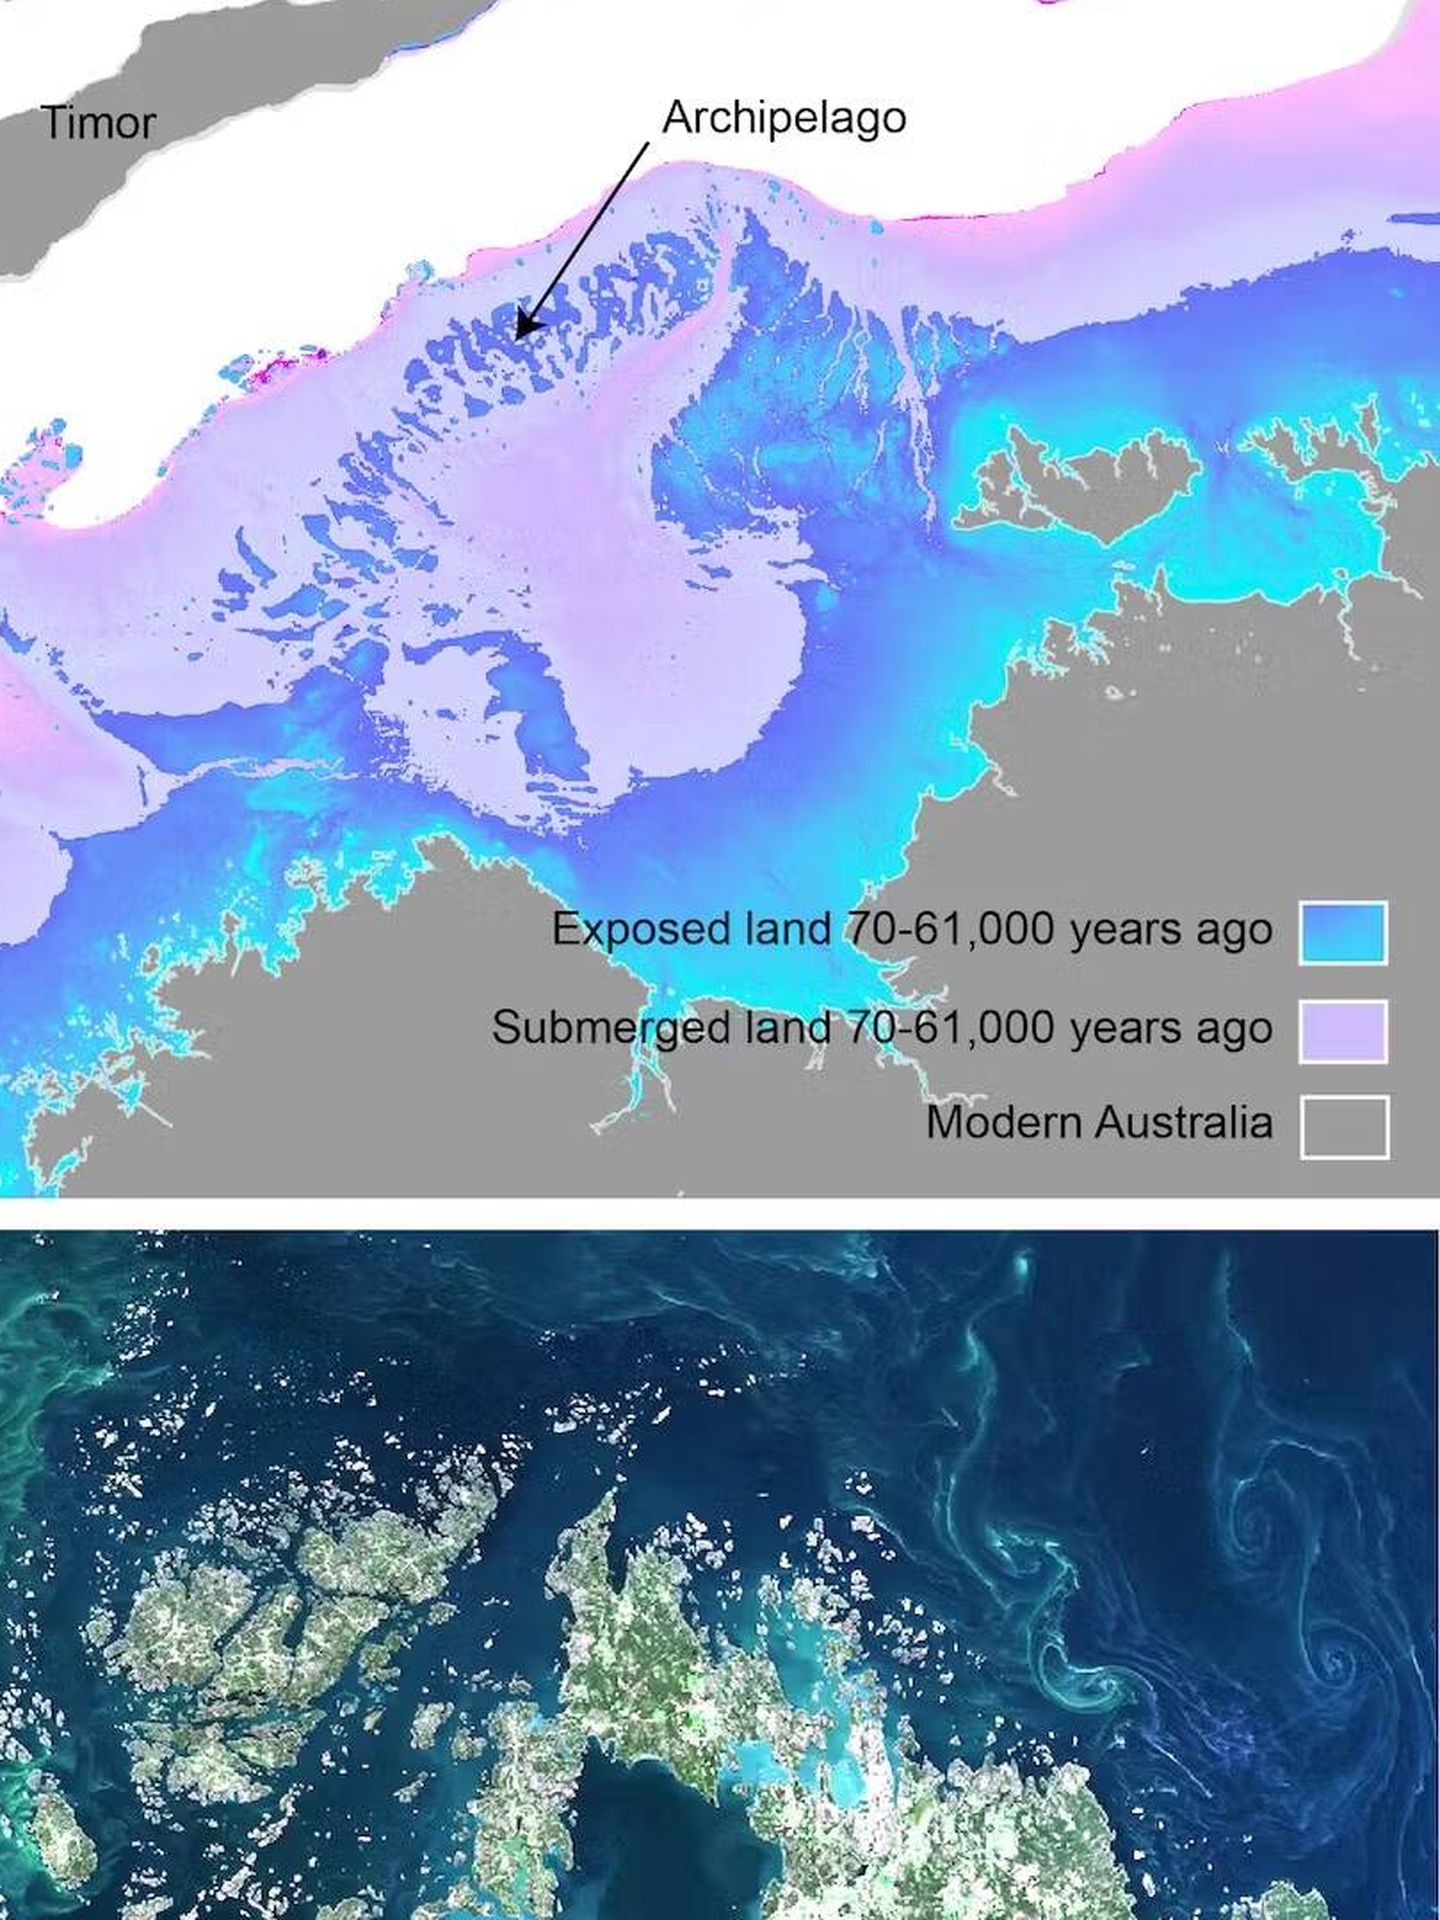 La zona del norte de australia donde se encuentra el continente perdido. (US Geological Survey - Geoscience Australia)